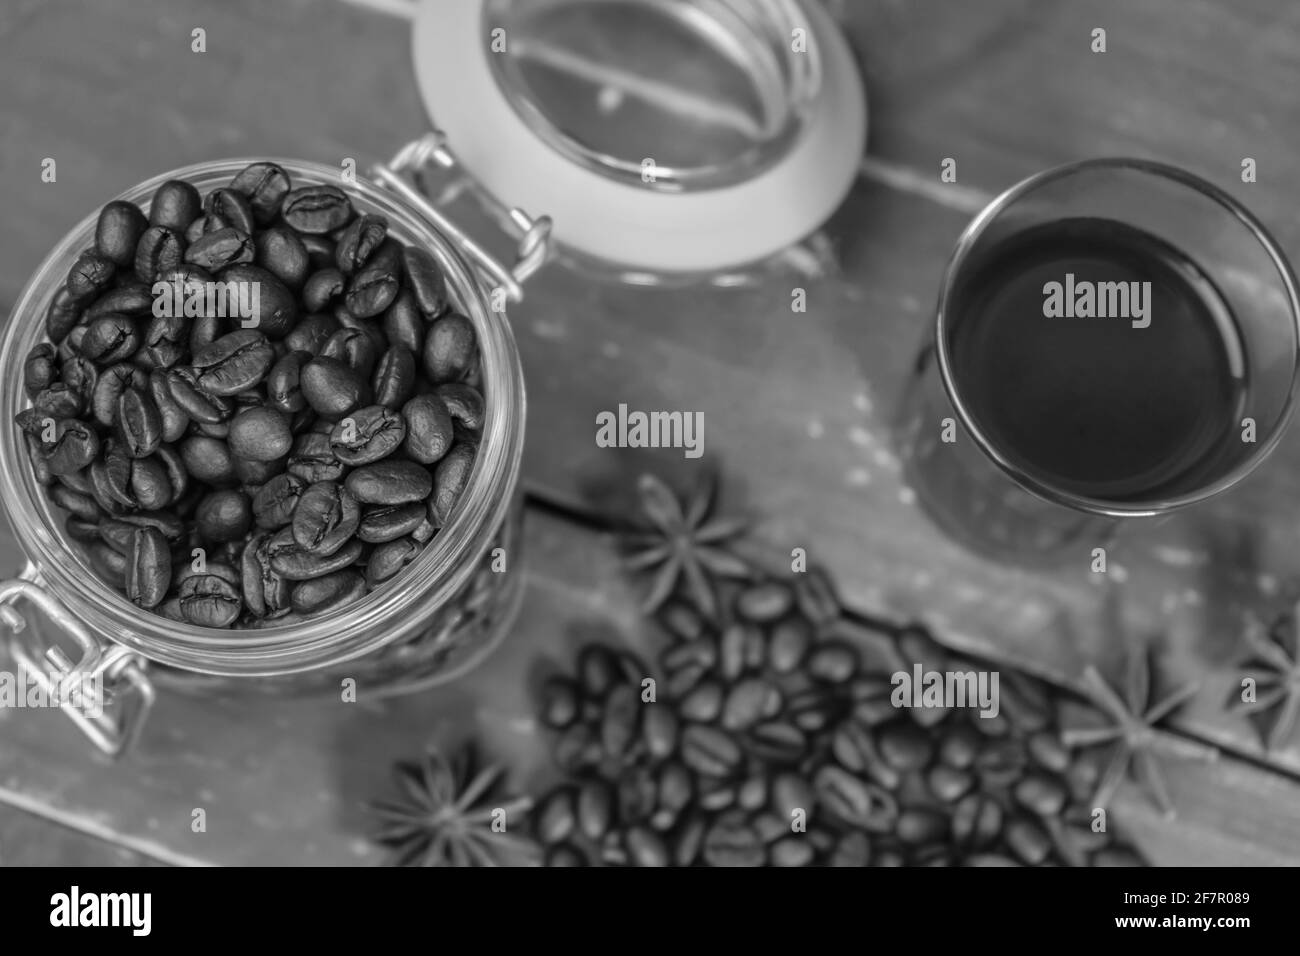 Vue de dessus café américain noir en verre avec grains de café torréfiés en pot sur table rustique en bois.Photographie noir et blanc, fond de café vintage Banque D'Images